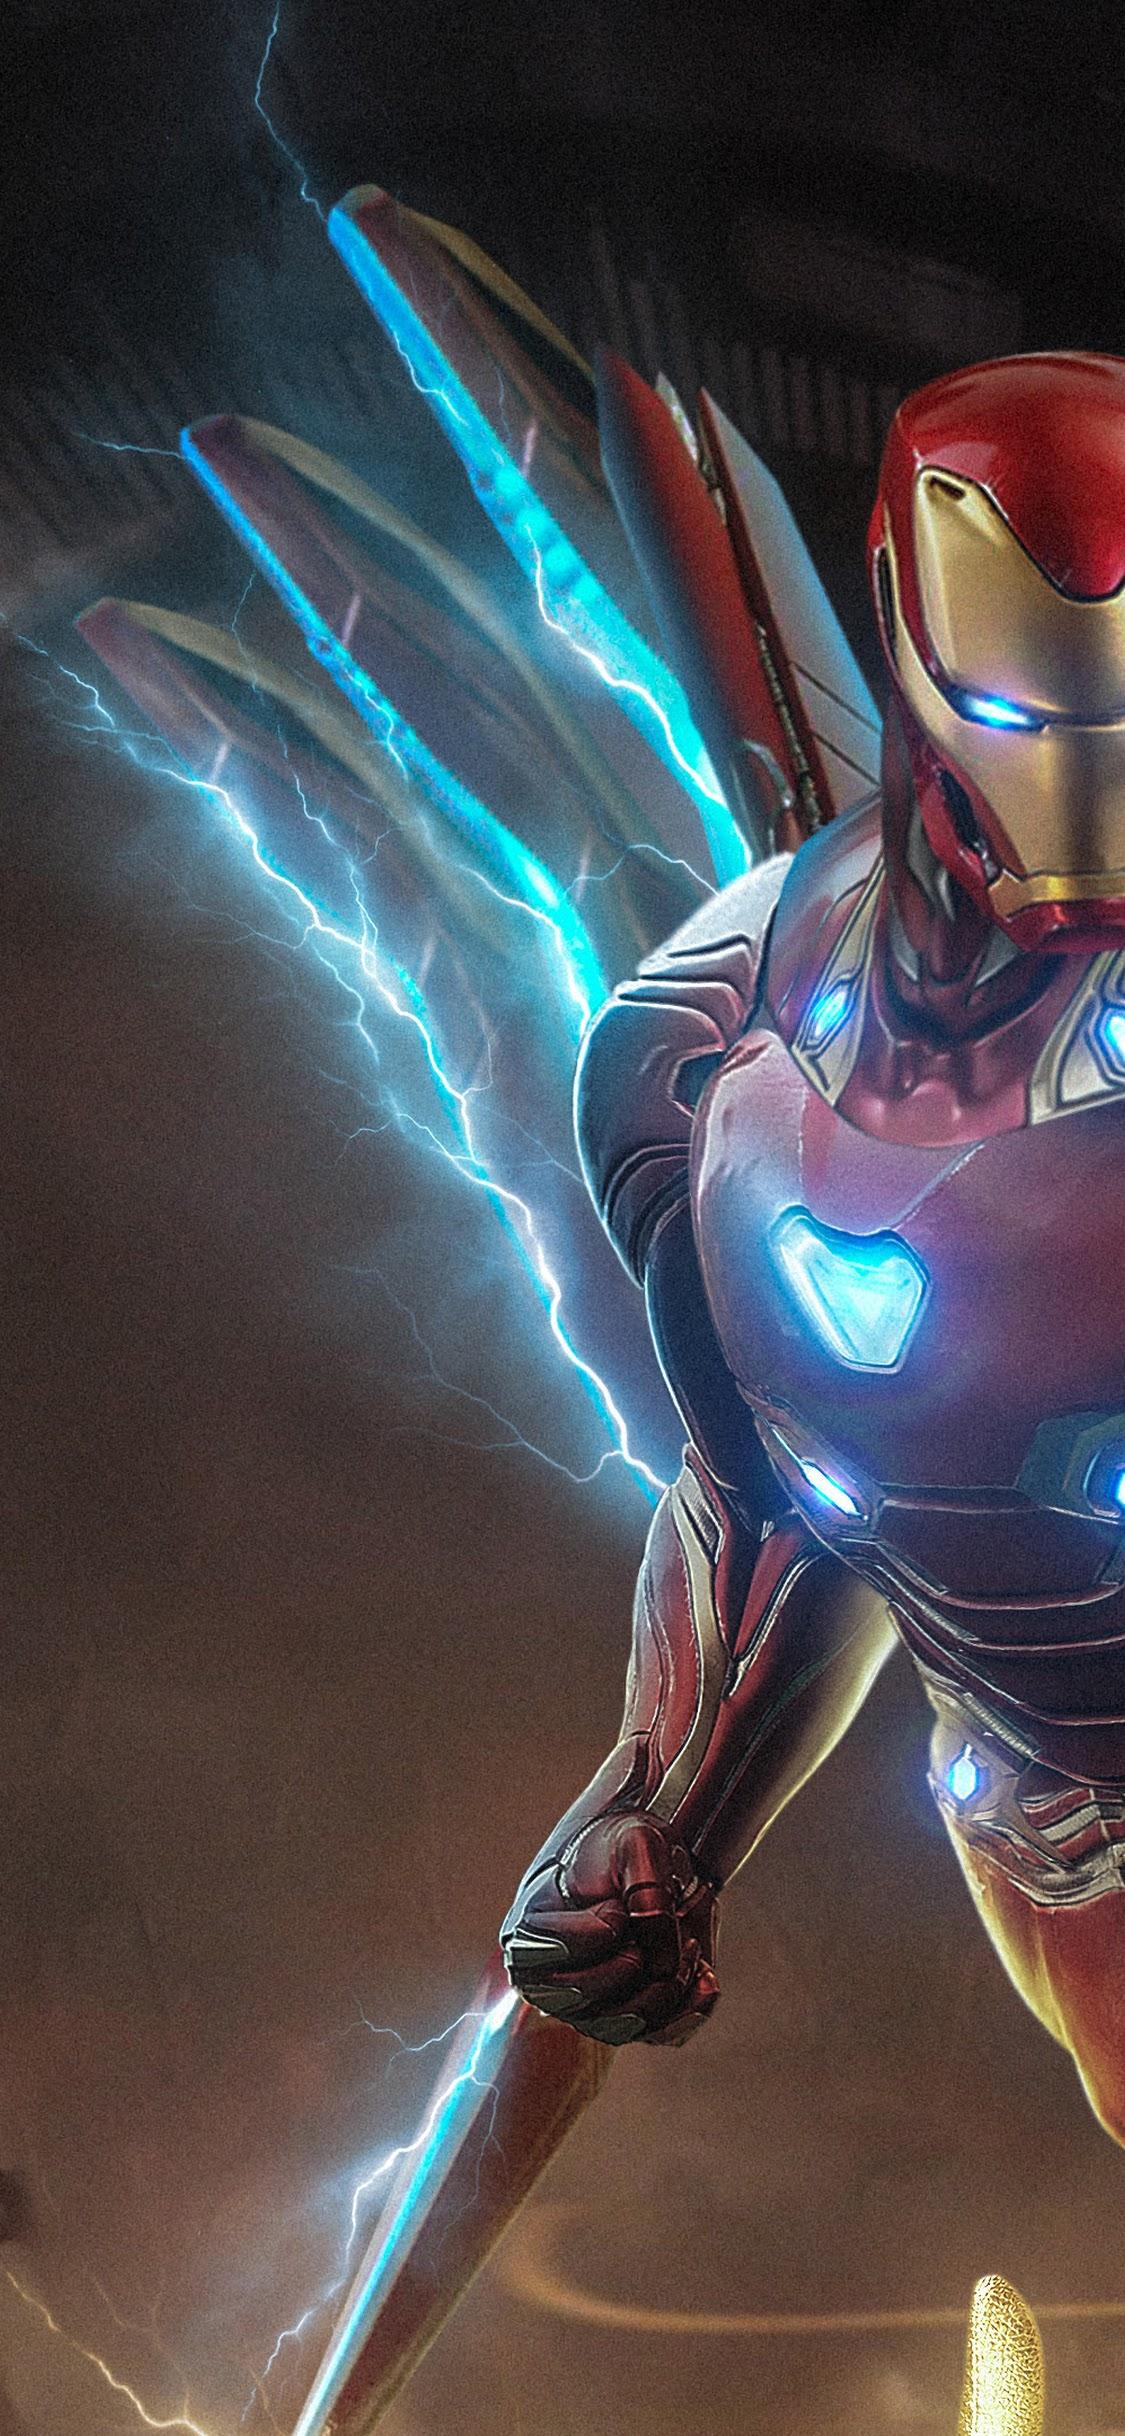 Đang sử dụng iPhone X và yêu thích siêu anh hùng Iron Man? Hãy cập nhật ngay ảnh nền Iron Man phiên bản mới nhất với thiết kế độc đáo và cực kỳ ấn tượng. Chỉ cần một cái nhìn, bạn sẽ bị cuốn hút vào thế giới của Tony Stark.